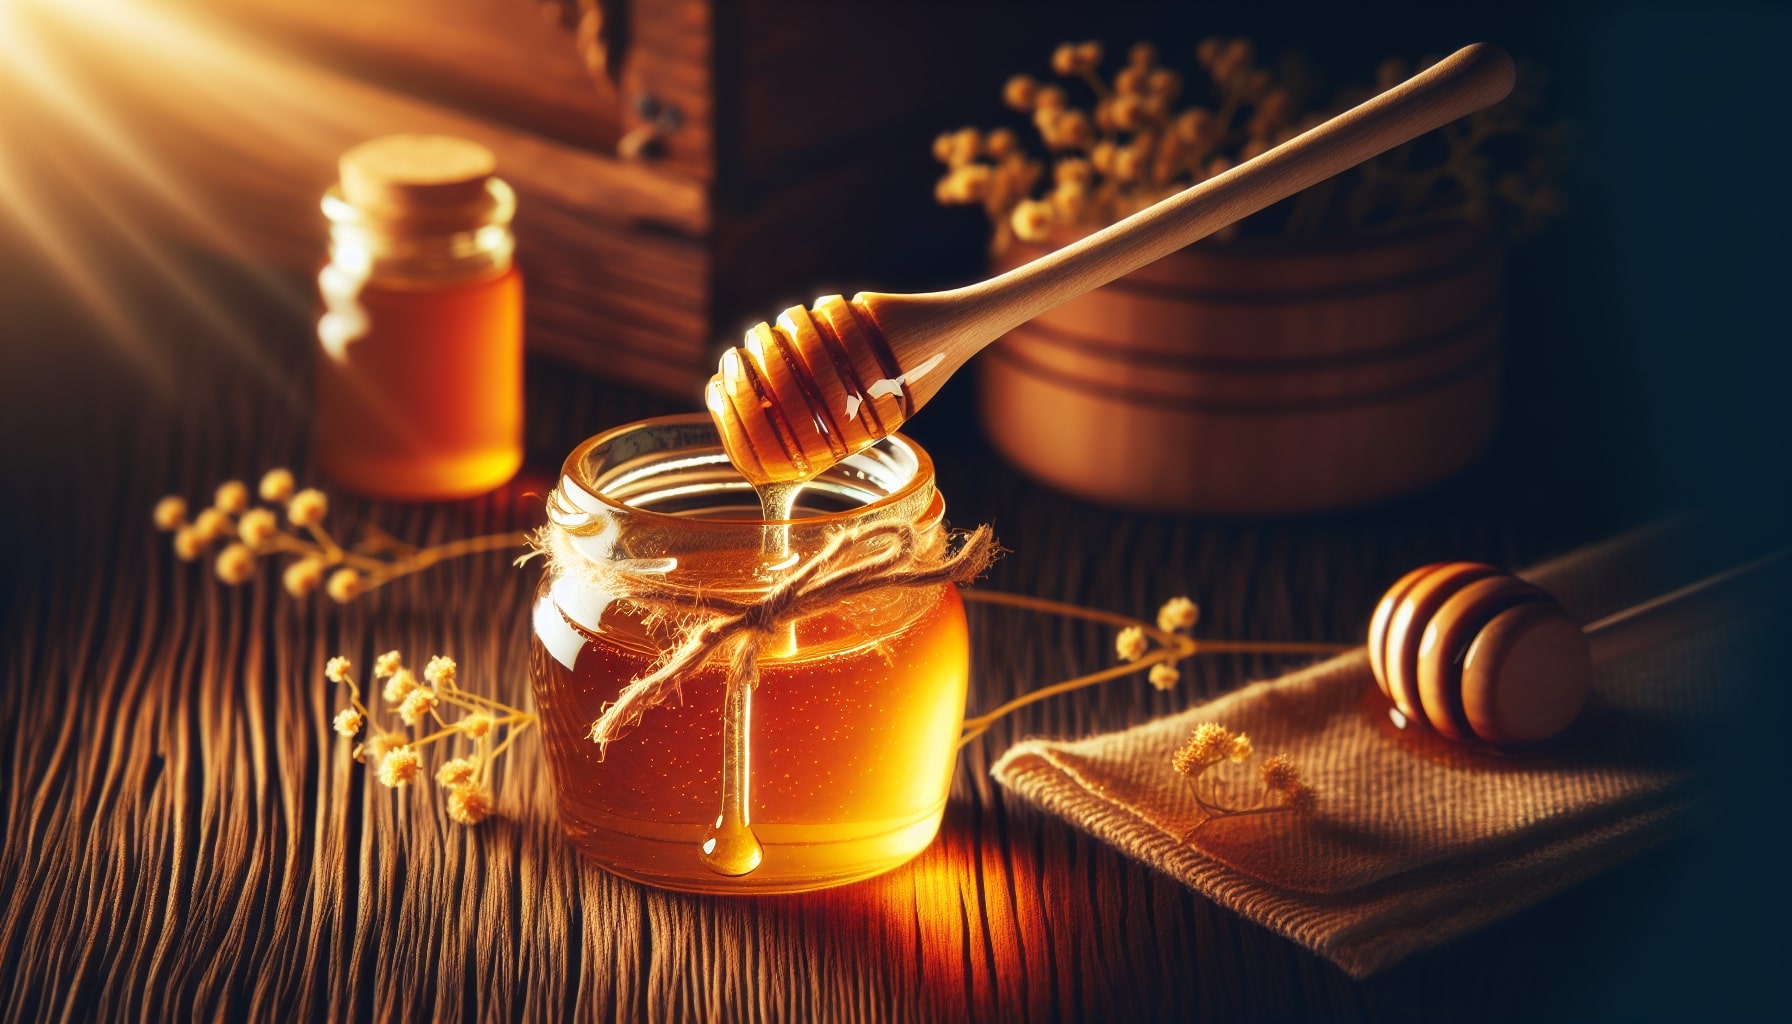 Honung, den gyllene nektarn från binas ansträngda arbete, har länge varit ett av naturens mest älskade och prisade livsmedel.